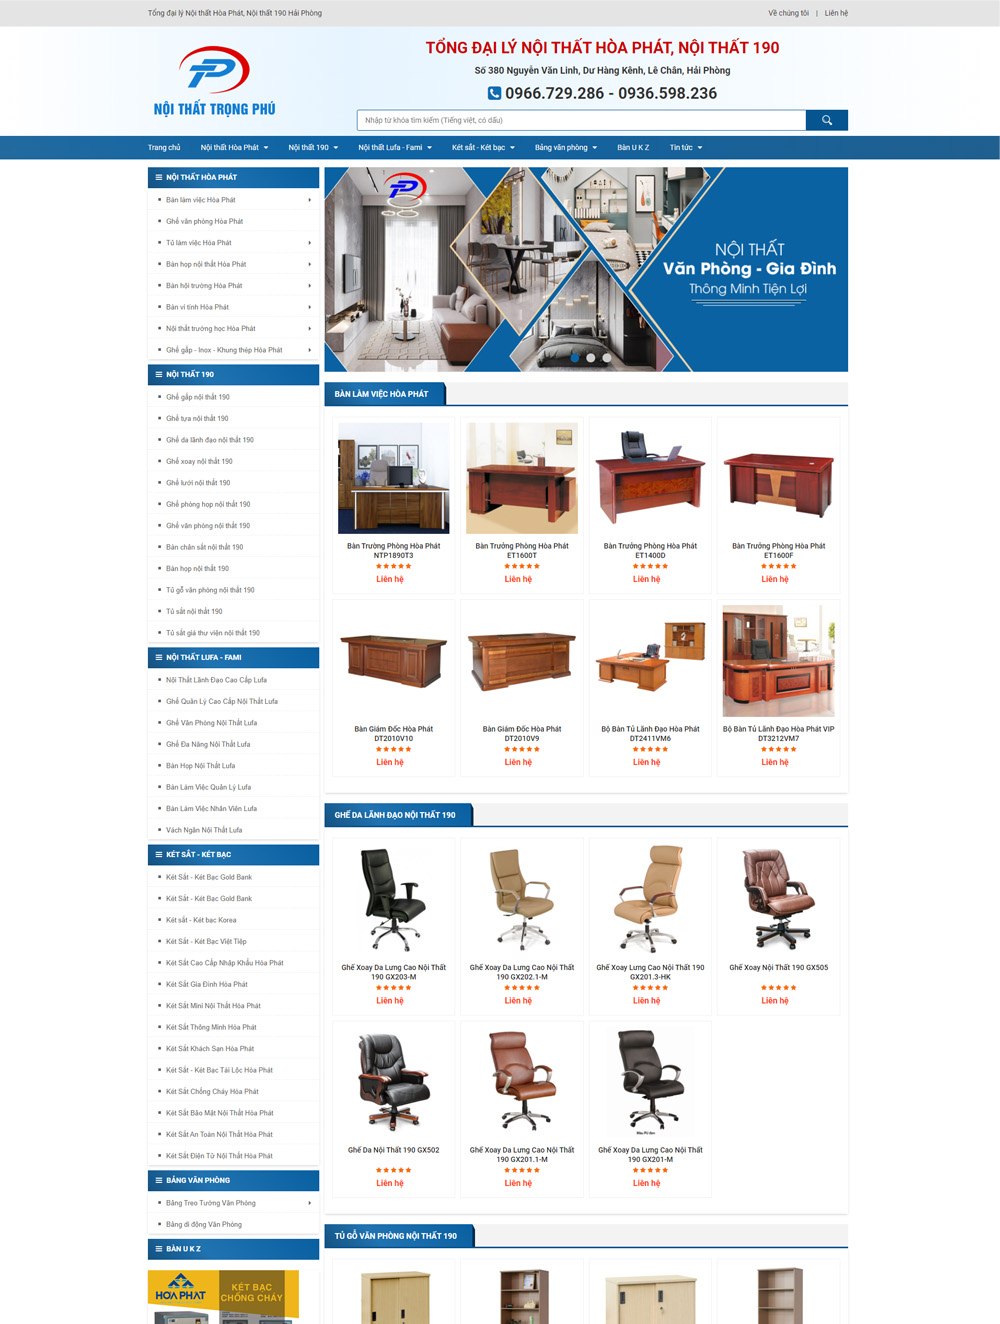 Mẫu web tổng đại lý bán nội thất bàn ghế uy tín, chất lượng